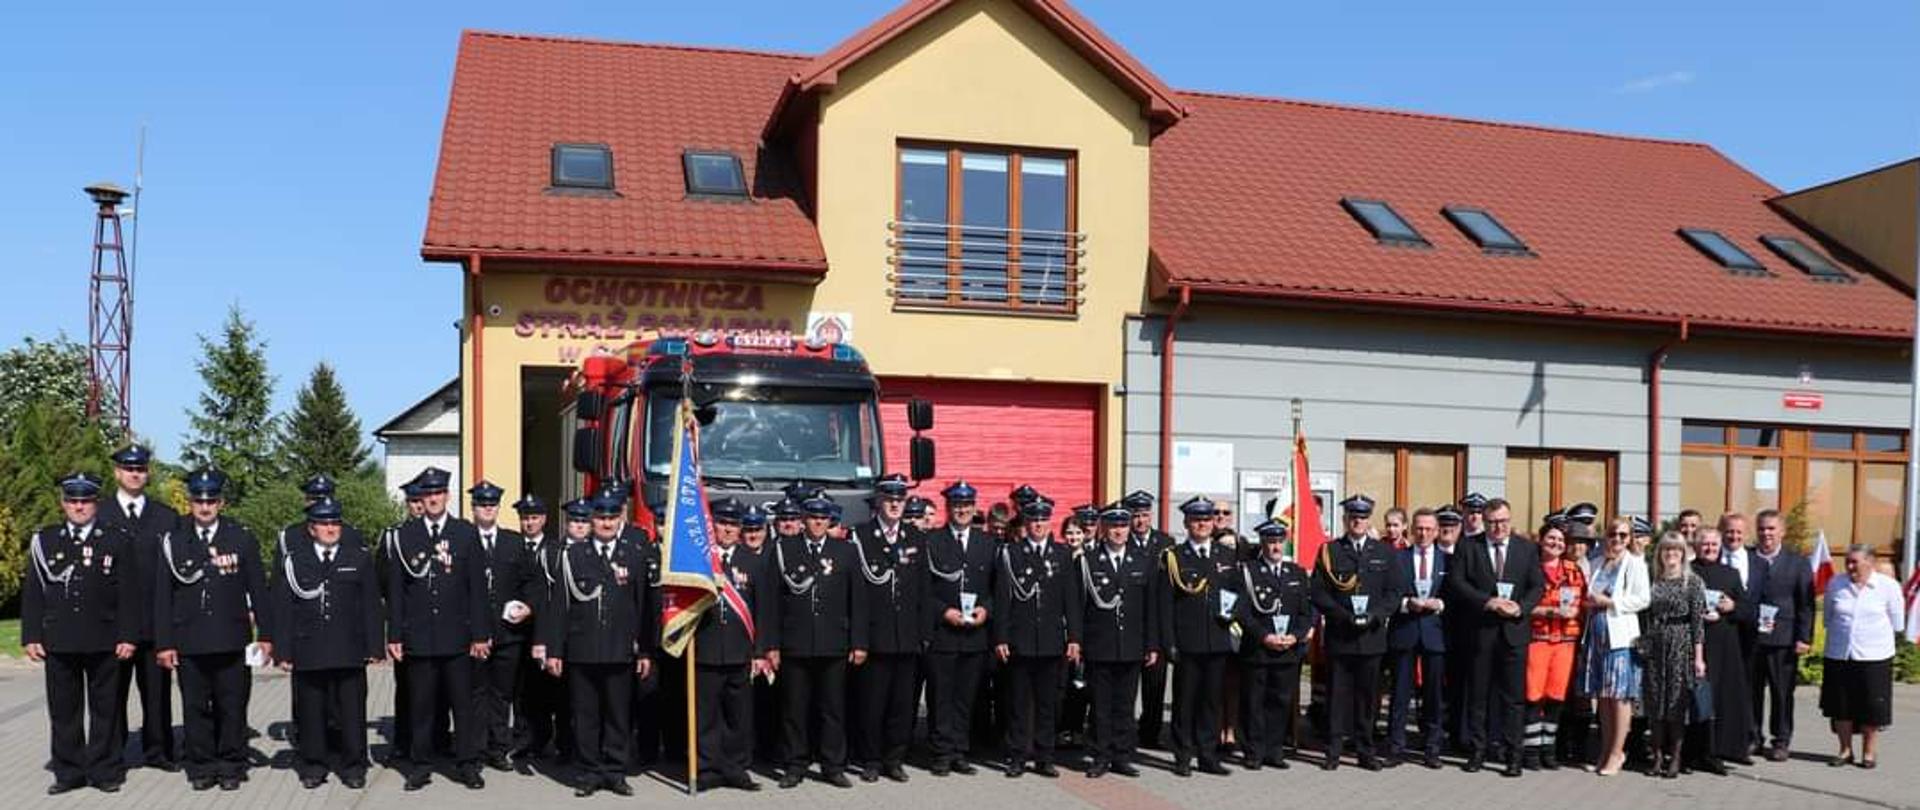 Na zdjęciu widać zgromadzonych strażaków ze sztandarem zgromadzonych przed strażnicą OSP z okazji uroczystość 100-lecia istnienia jednostki Ochotniczej Straży Pożarnej w Czerwonem